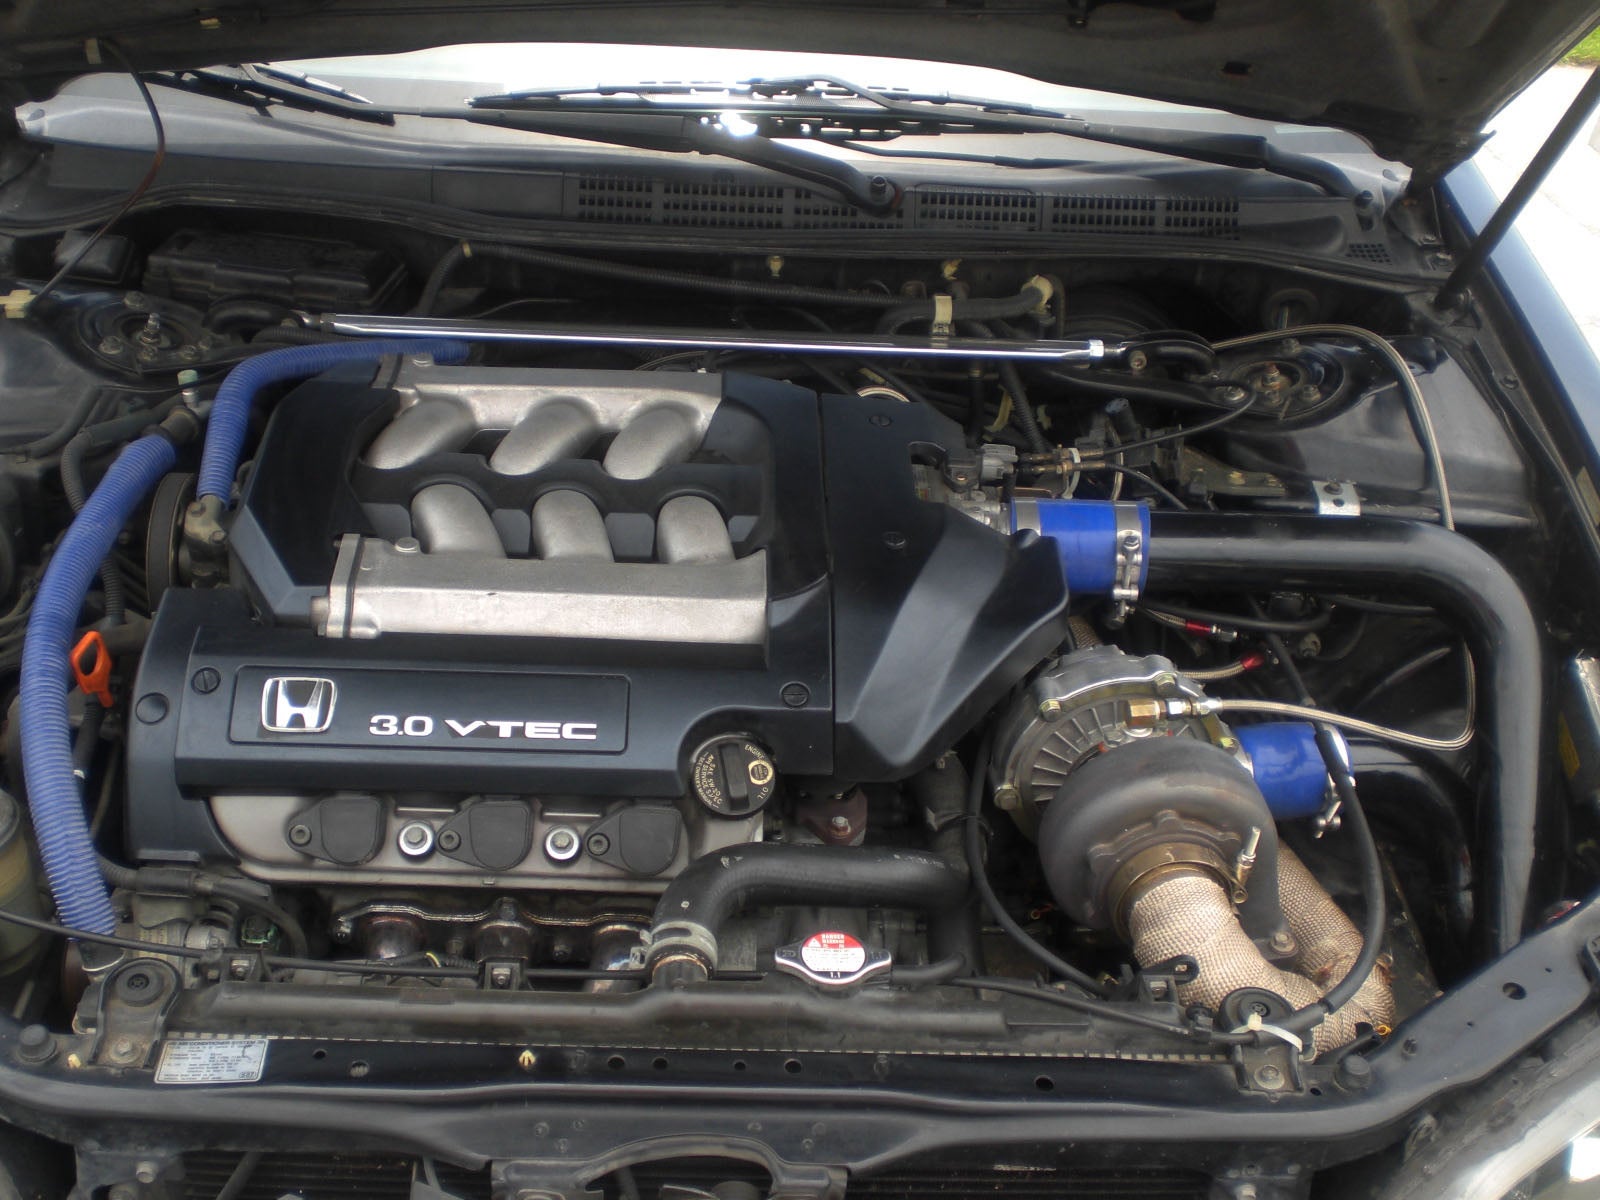 2001 Honda accord ex turbo kit #6